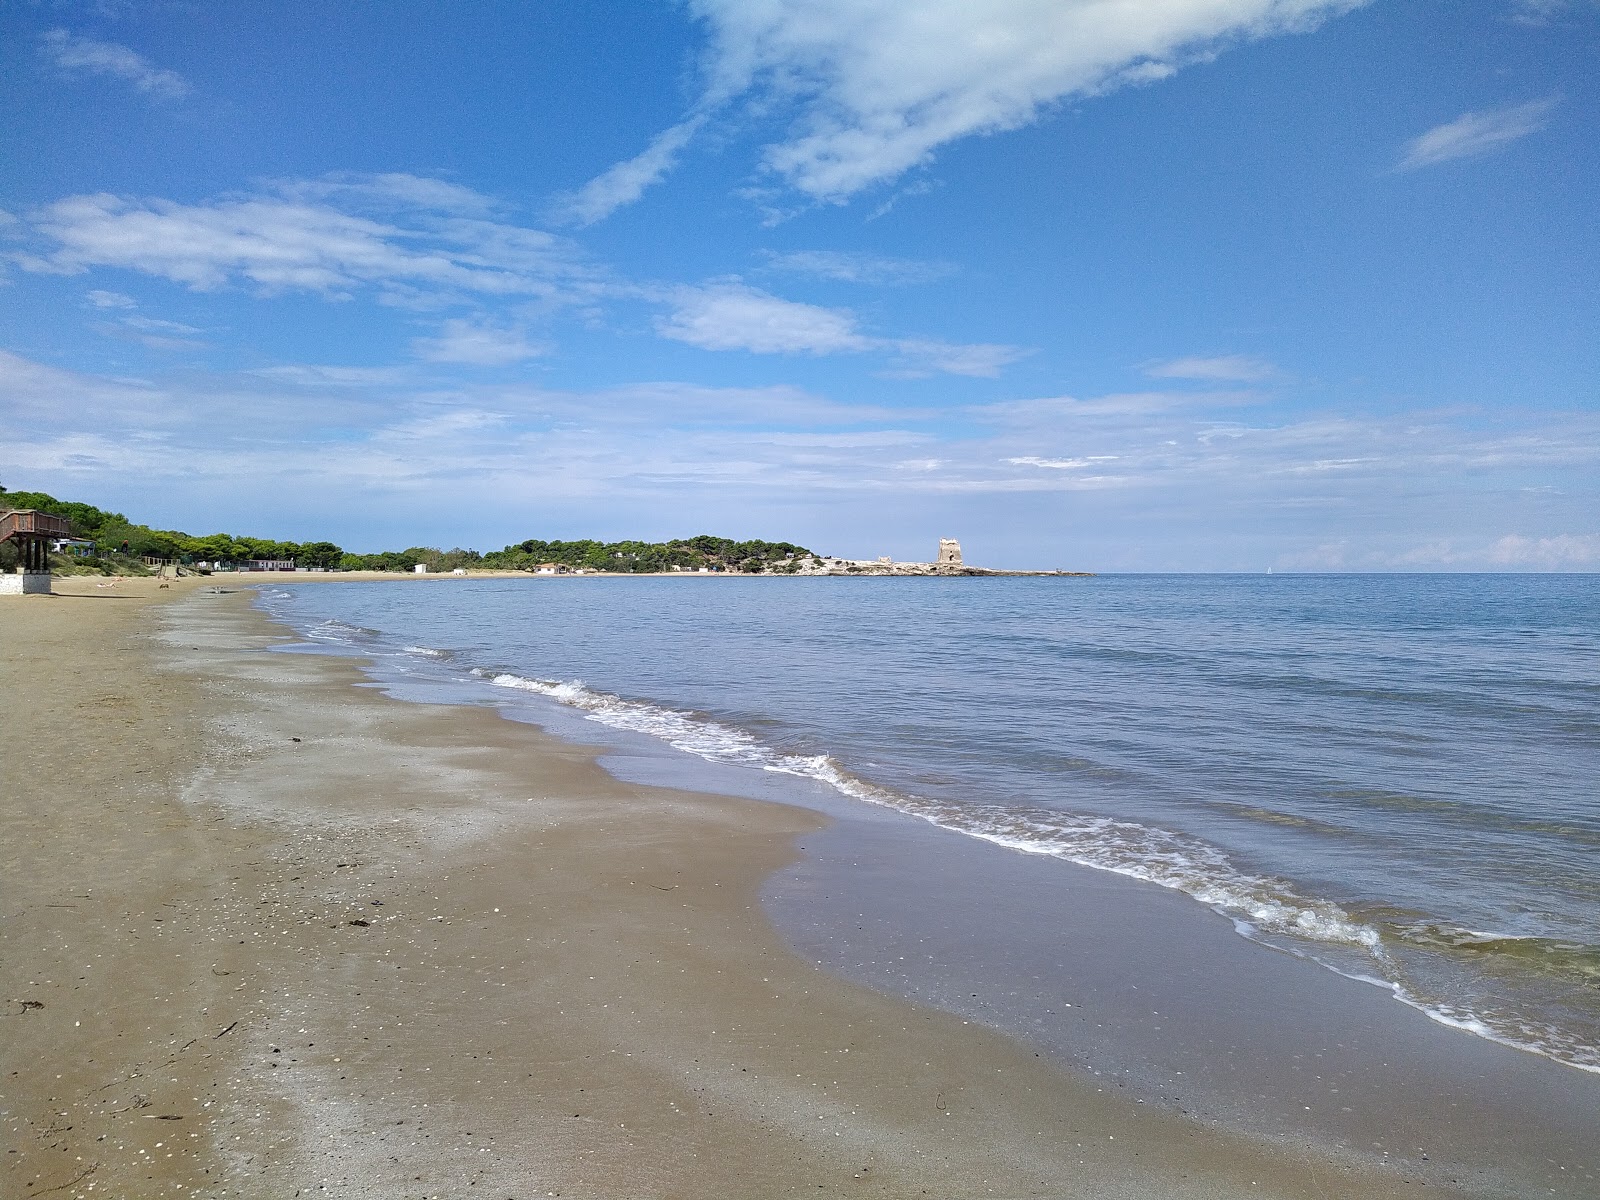 Zdjęcie Spiaggia di Sfinale - popularne miejsce wśród znawców relaksu